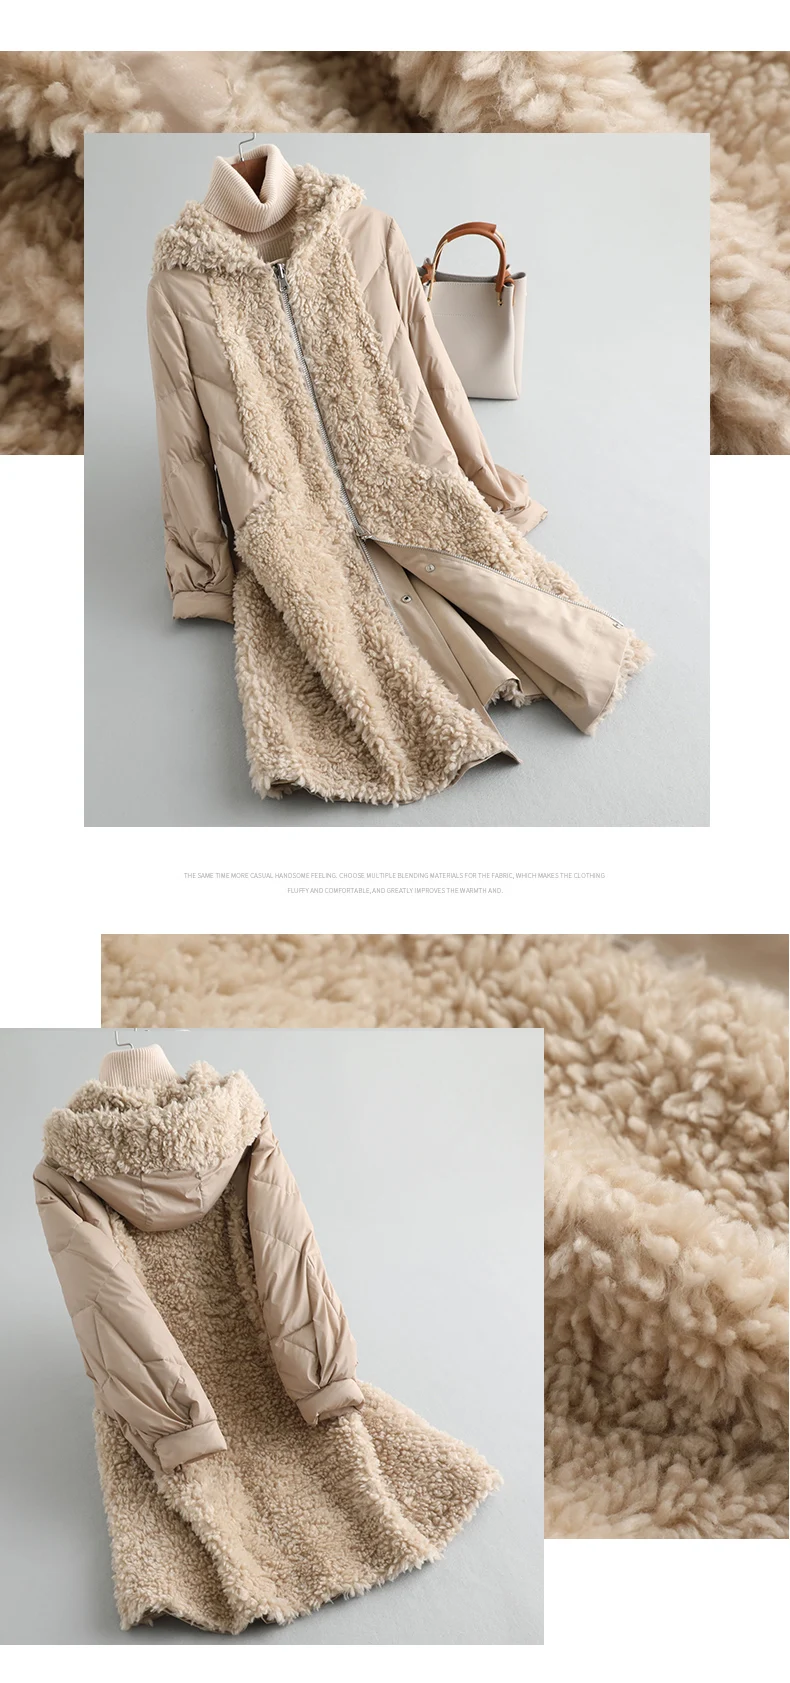 AYUNSUE/пуховик из овечьей шерсти для женщин, пальто из натурального меха, зимнее пальто для женщин, шерстяное пальто, женская Двусторонняя одежда, куртки MY4246